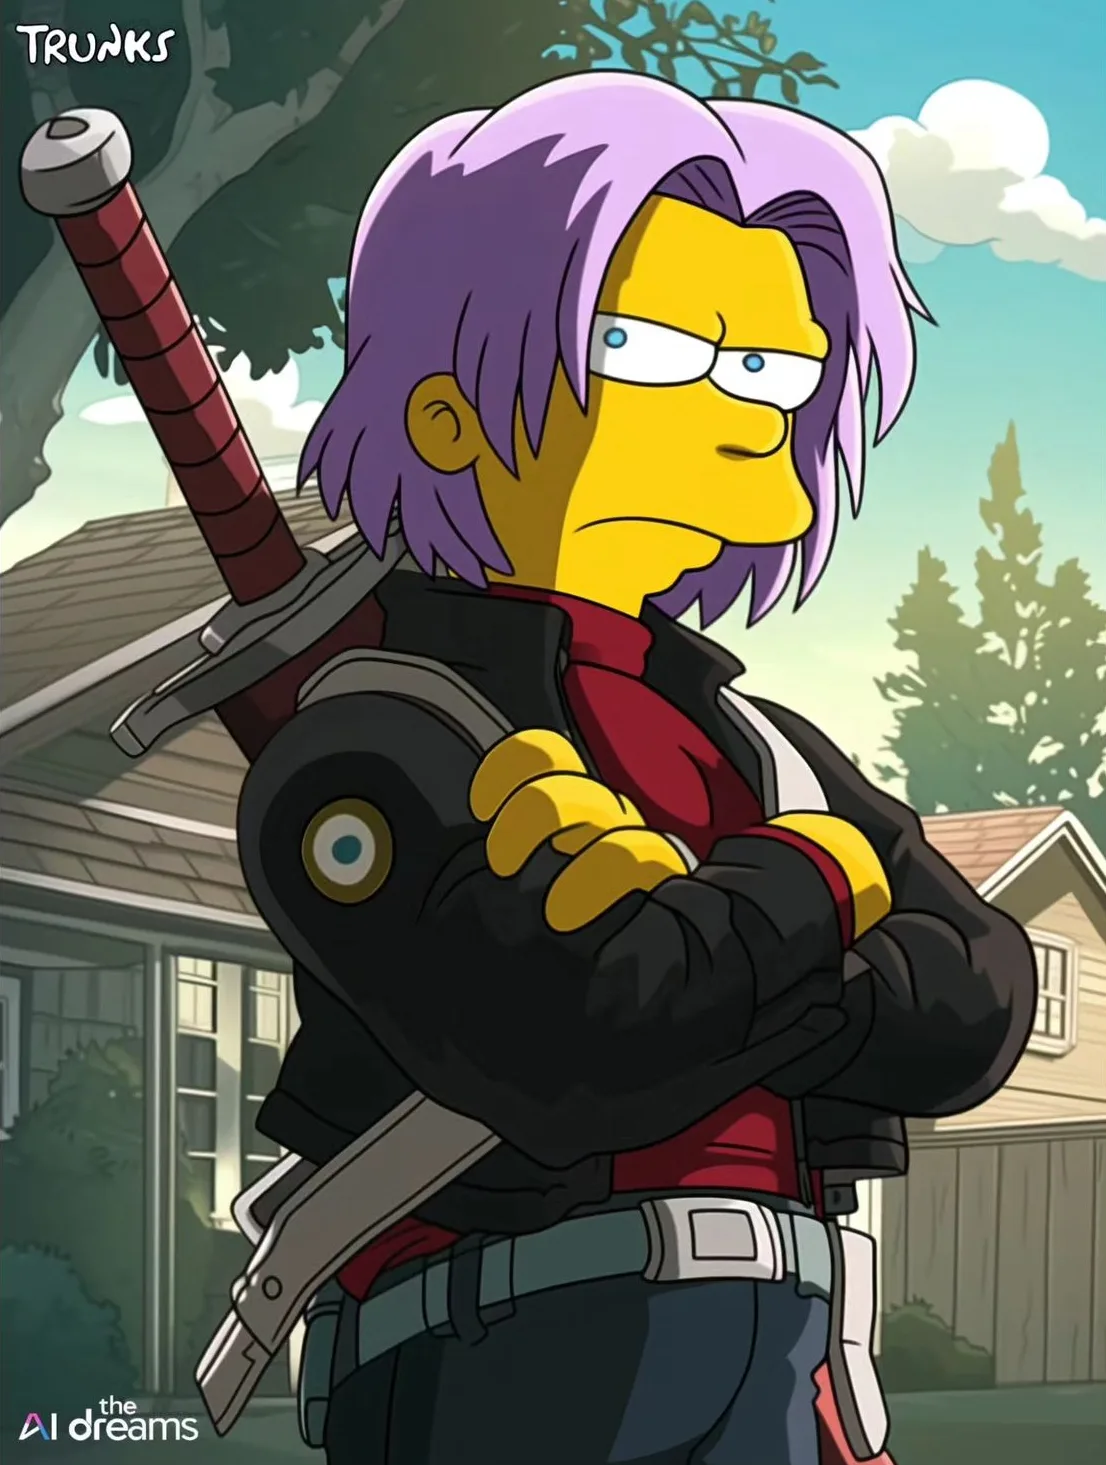 ตัวละคร Dragon Ball Z เวอร์ชั่นการ์ตูน The Simpsons Aiart